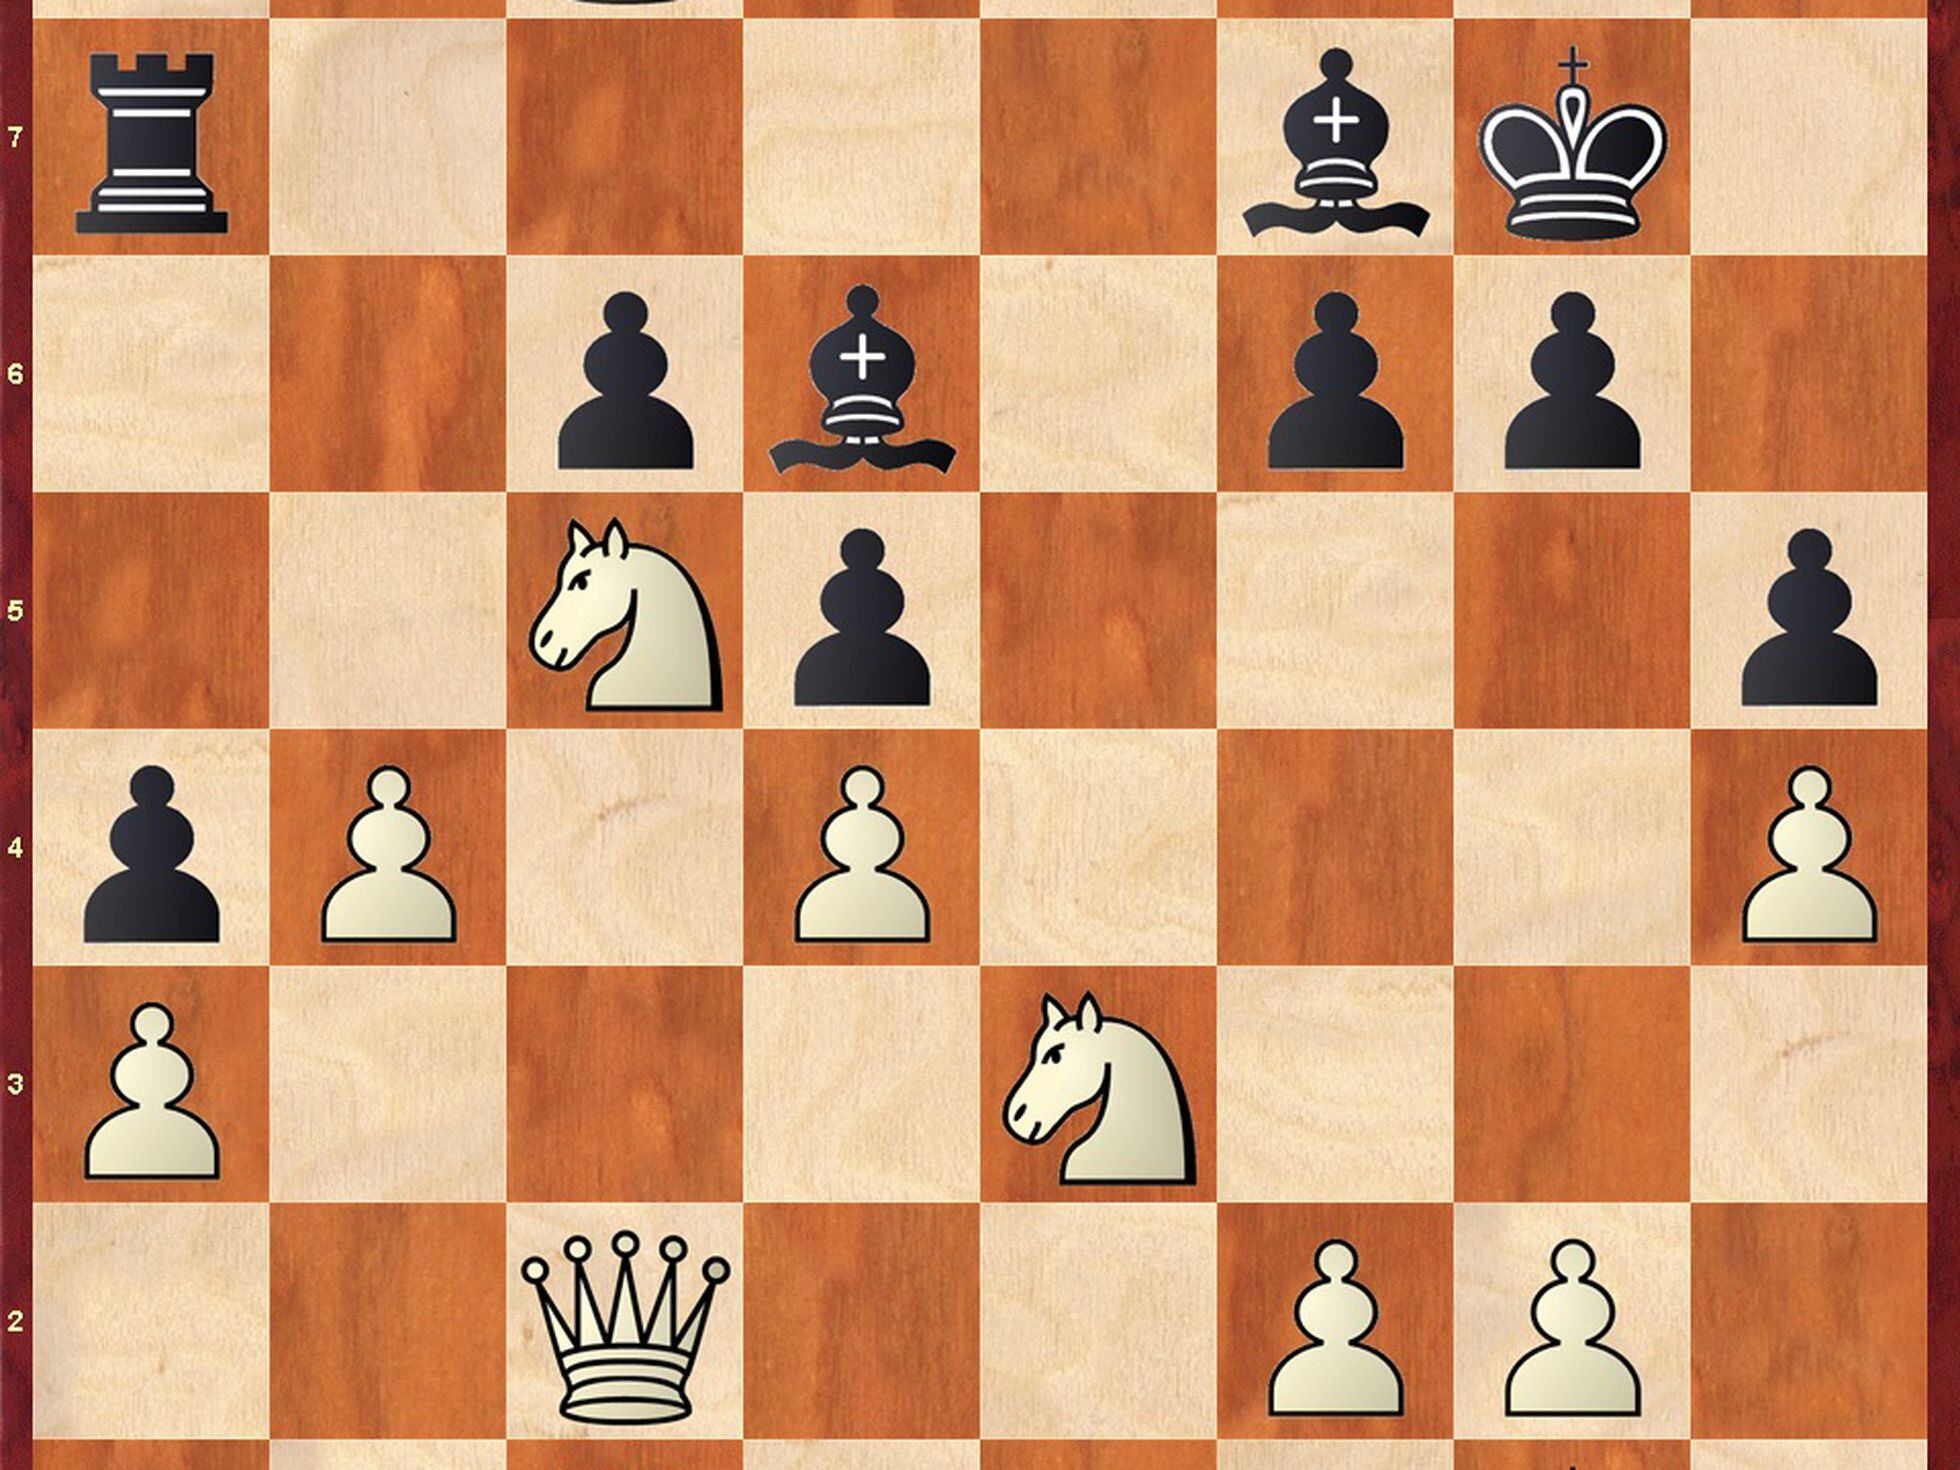 noticias - Firouzja-Carlsen para comenzar el Norway Chess